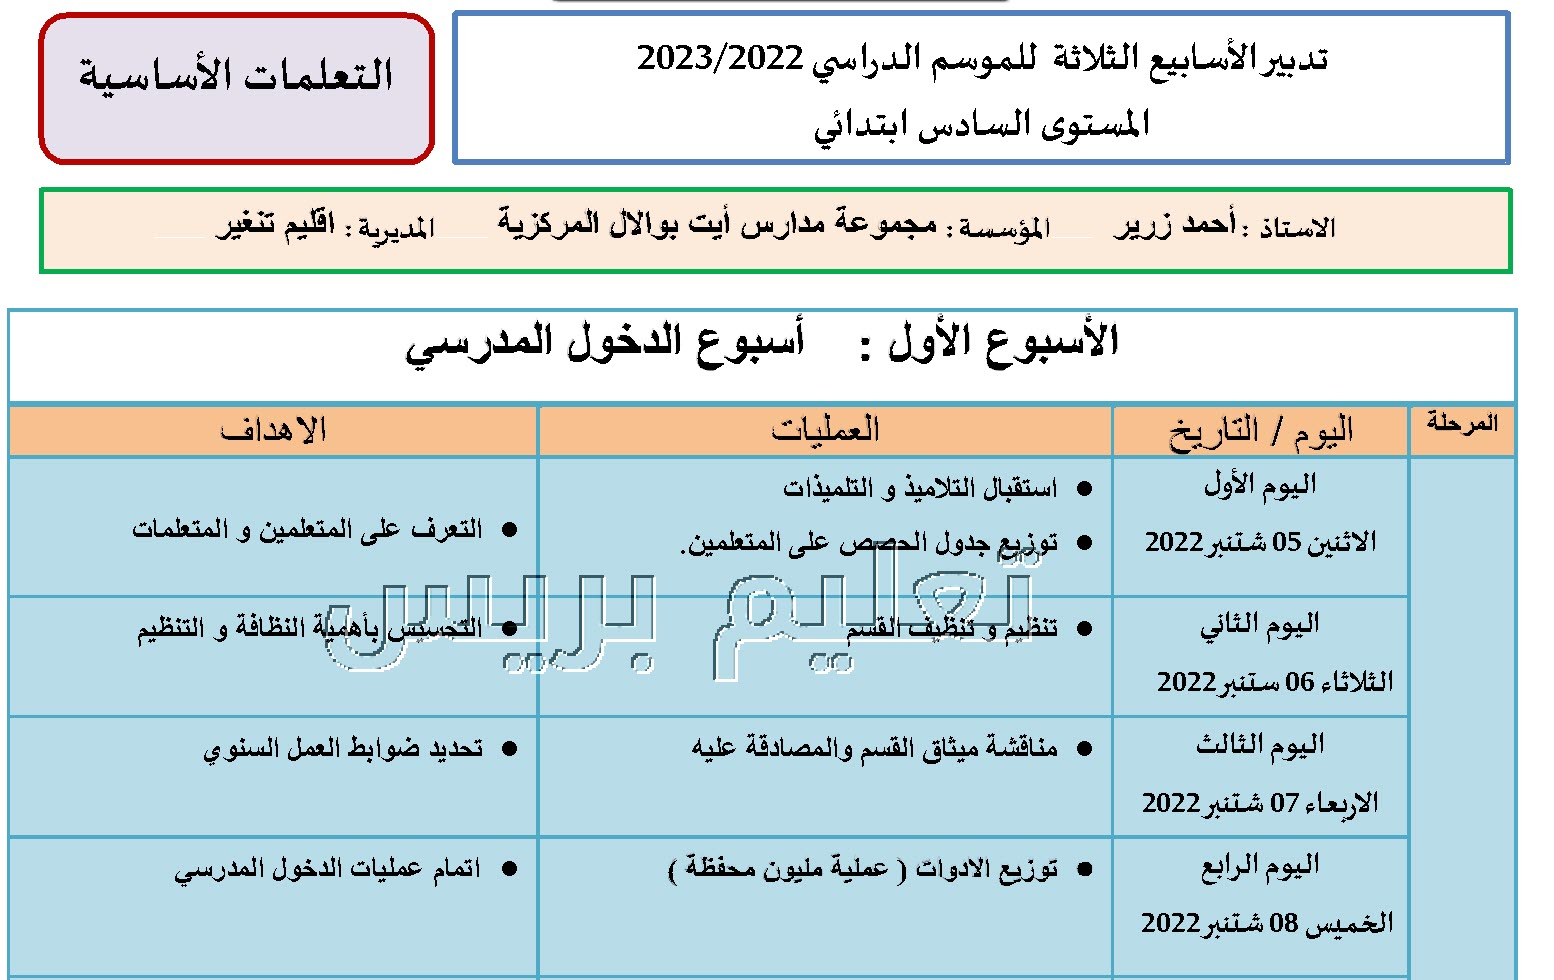 تدبير الأسابيع الثلاثة  للموسم الدراسي 2022/2023